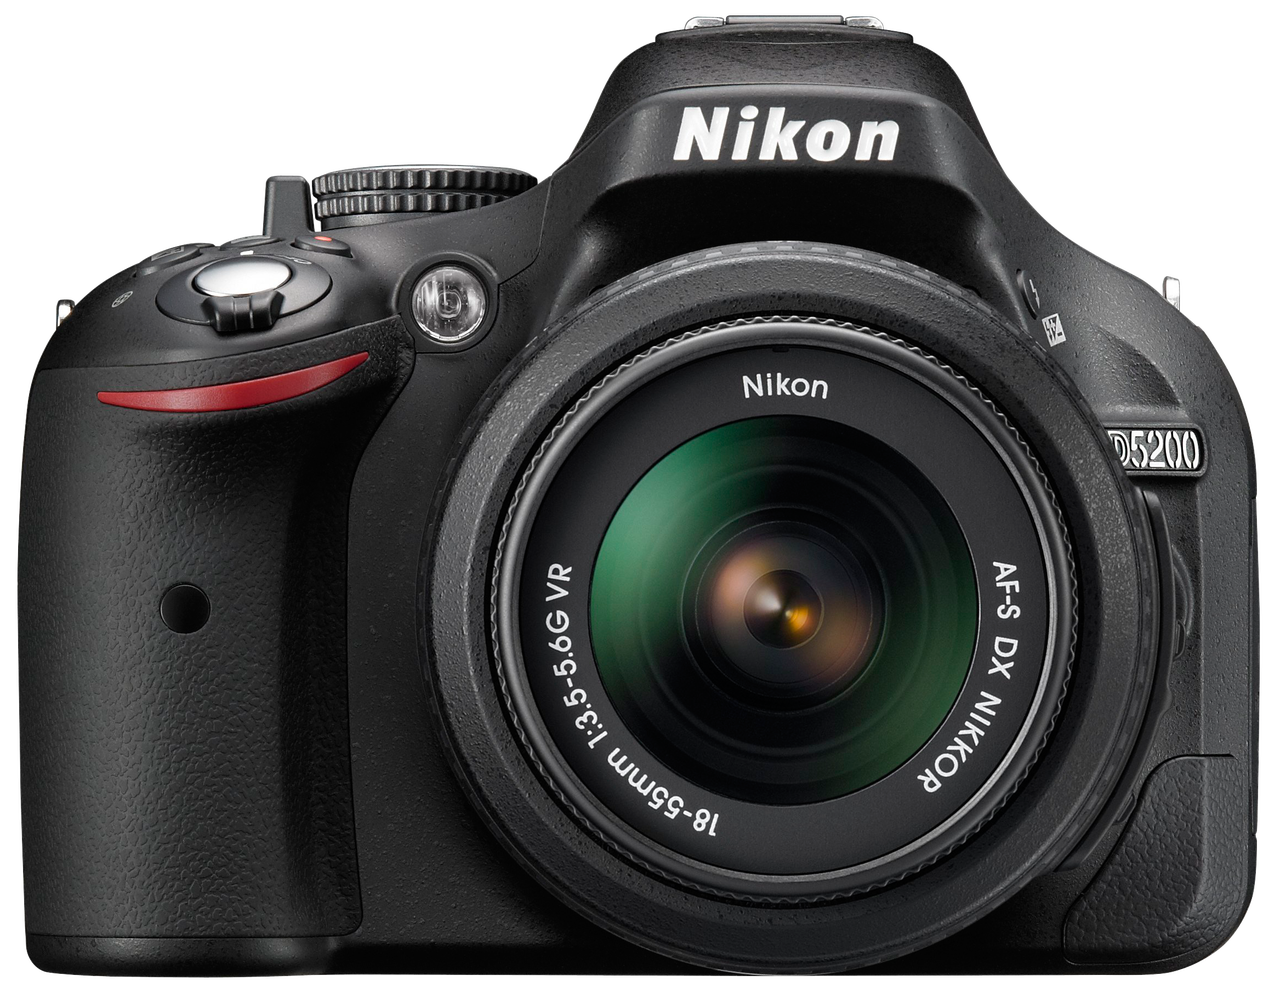 Obudowa aparatu Nikon D5200 dostępna jest w kilku wersjach kolorystycznych: czarnej, brązowej i czerwonej